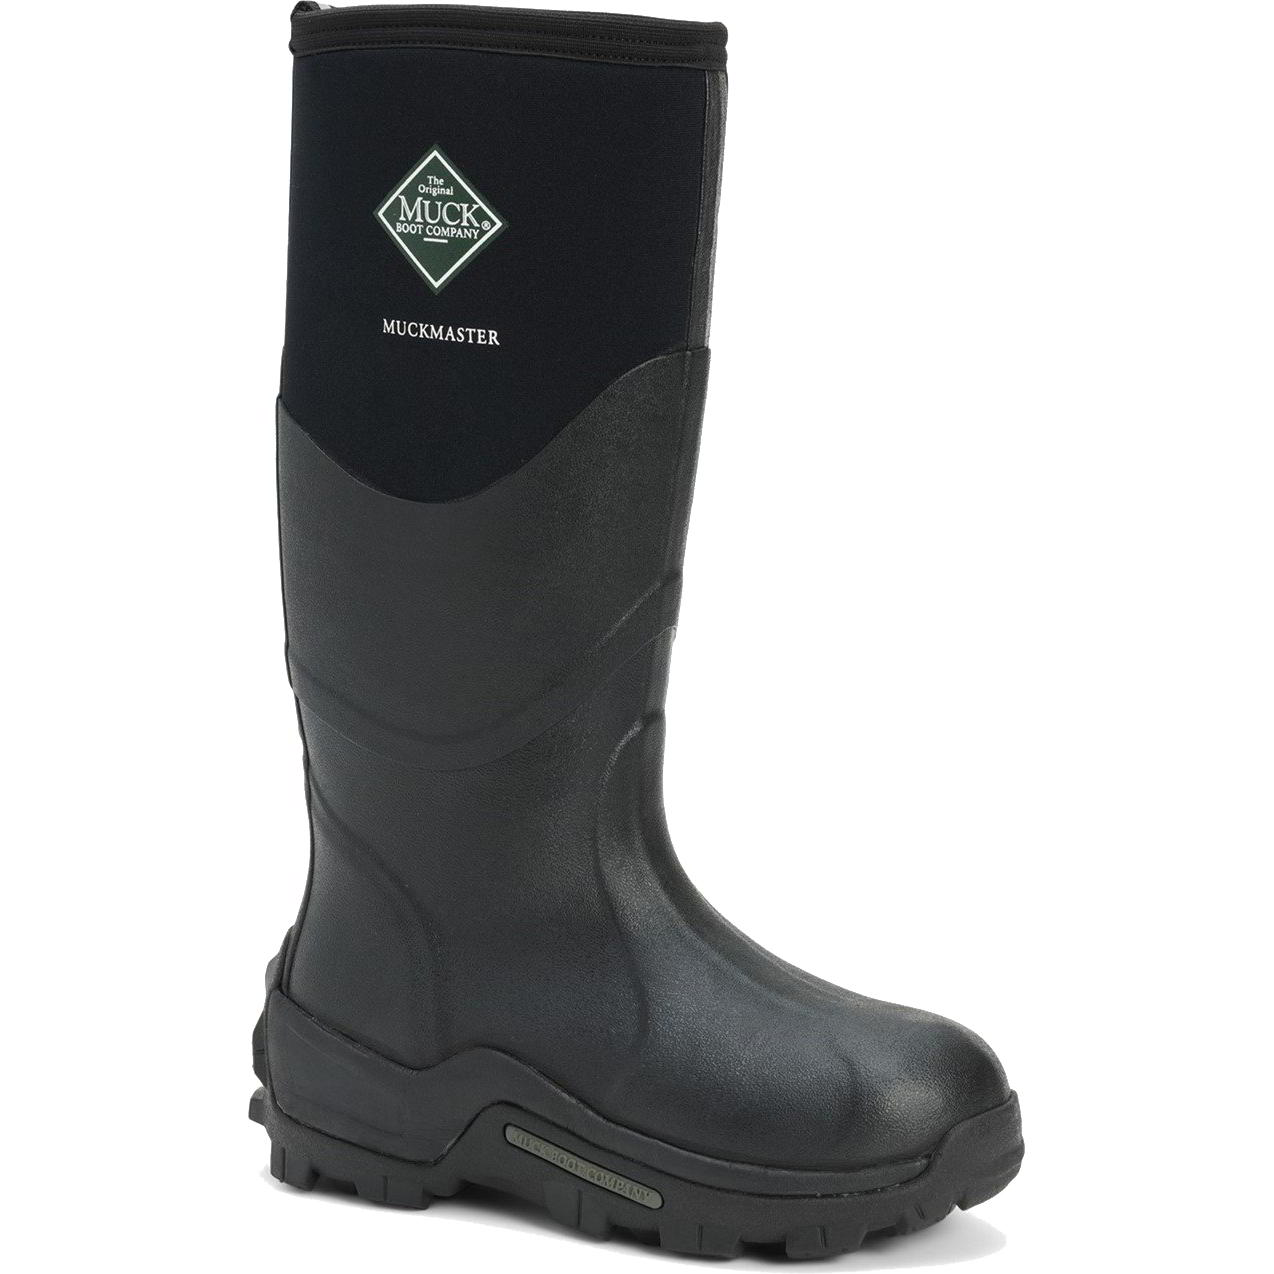 Muck Boots Mens Womens Master Neoprene Wellies Rain - UK 8 Black 2951